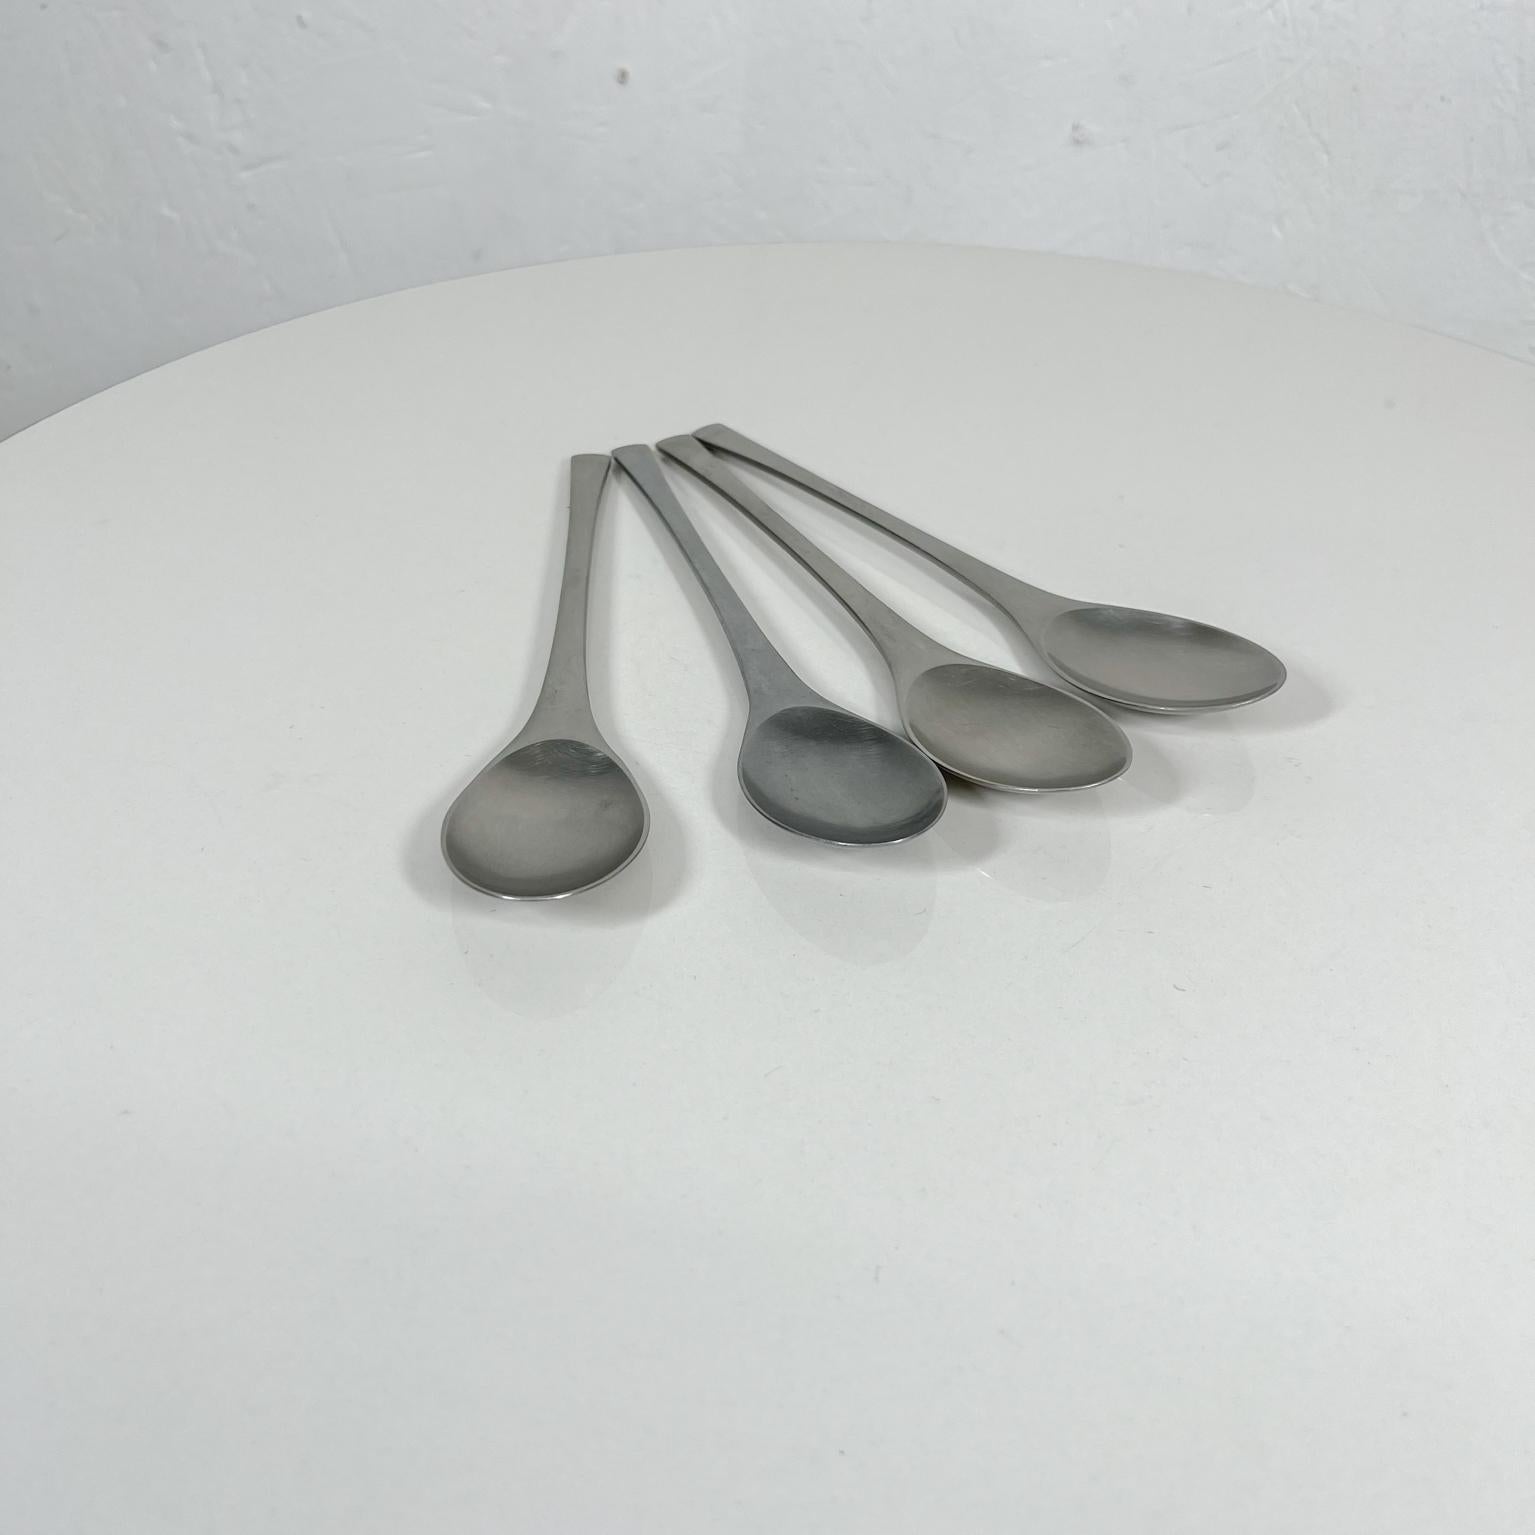 Stainless Steel 1950s Dansk Set 4 Spoons Odin Modern IHQ Jens Quistgaard Germany